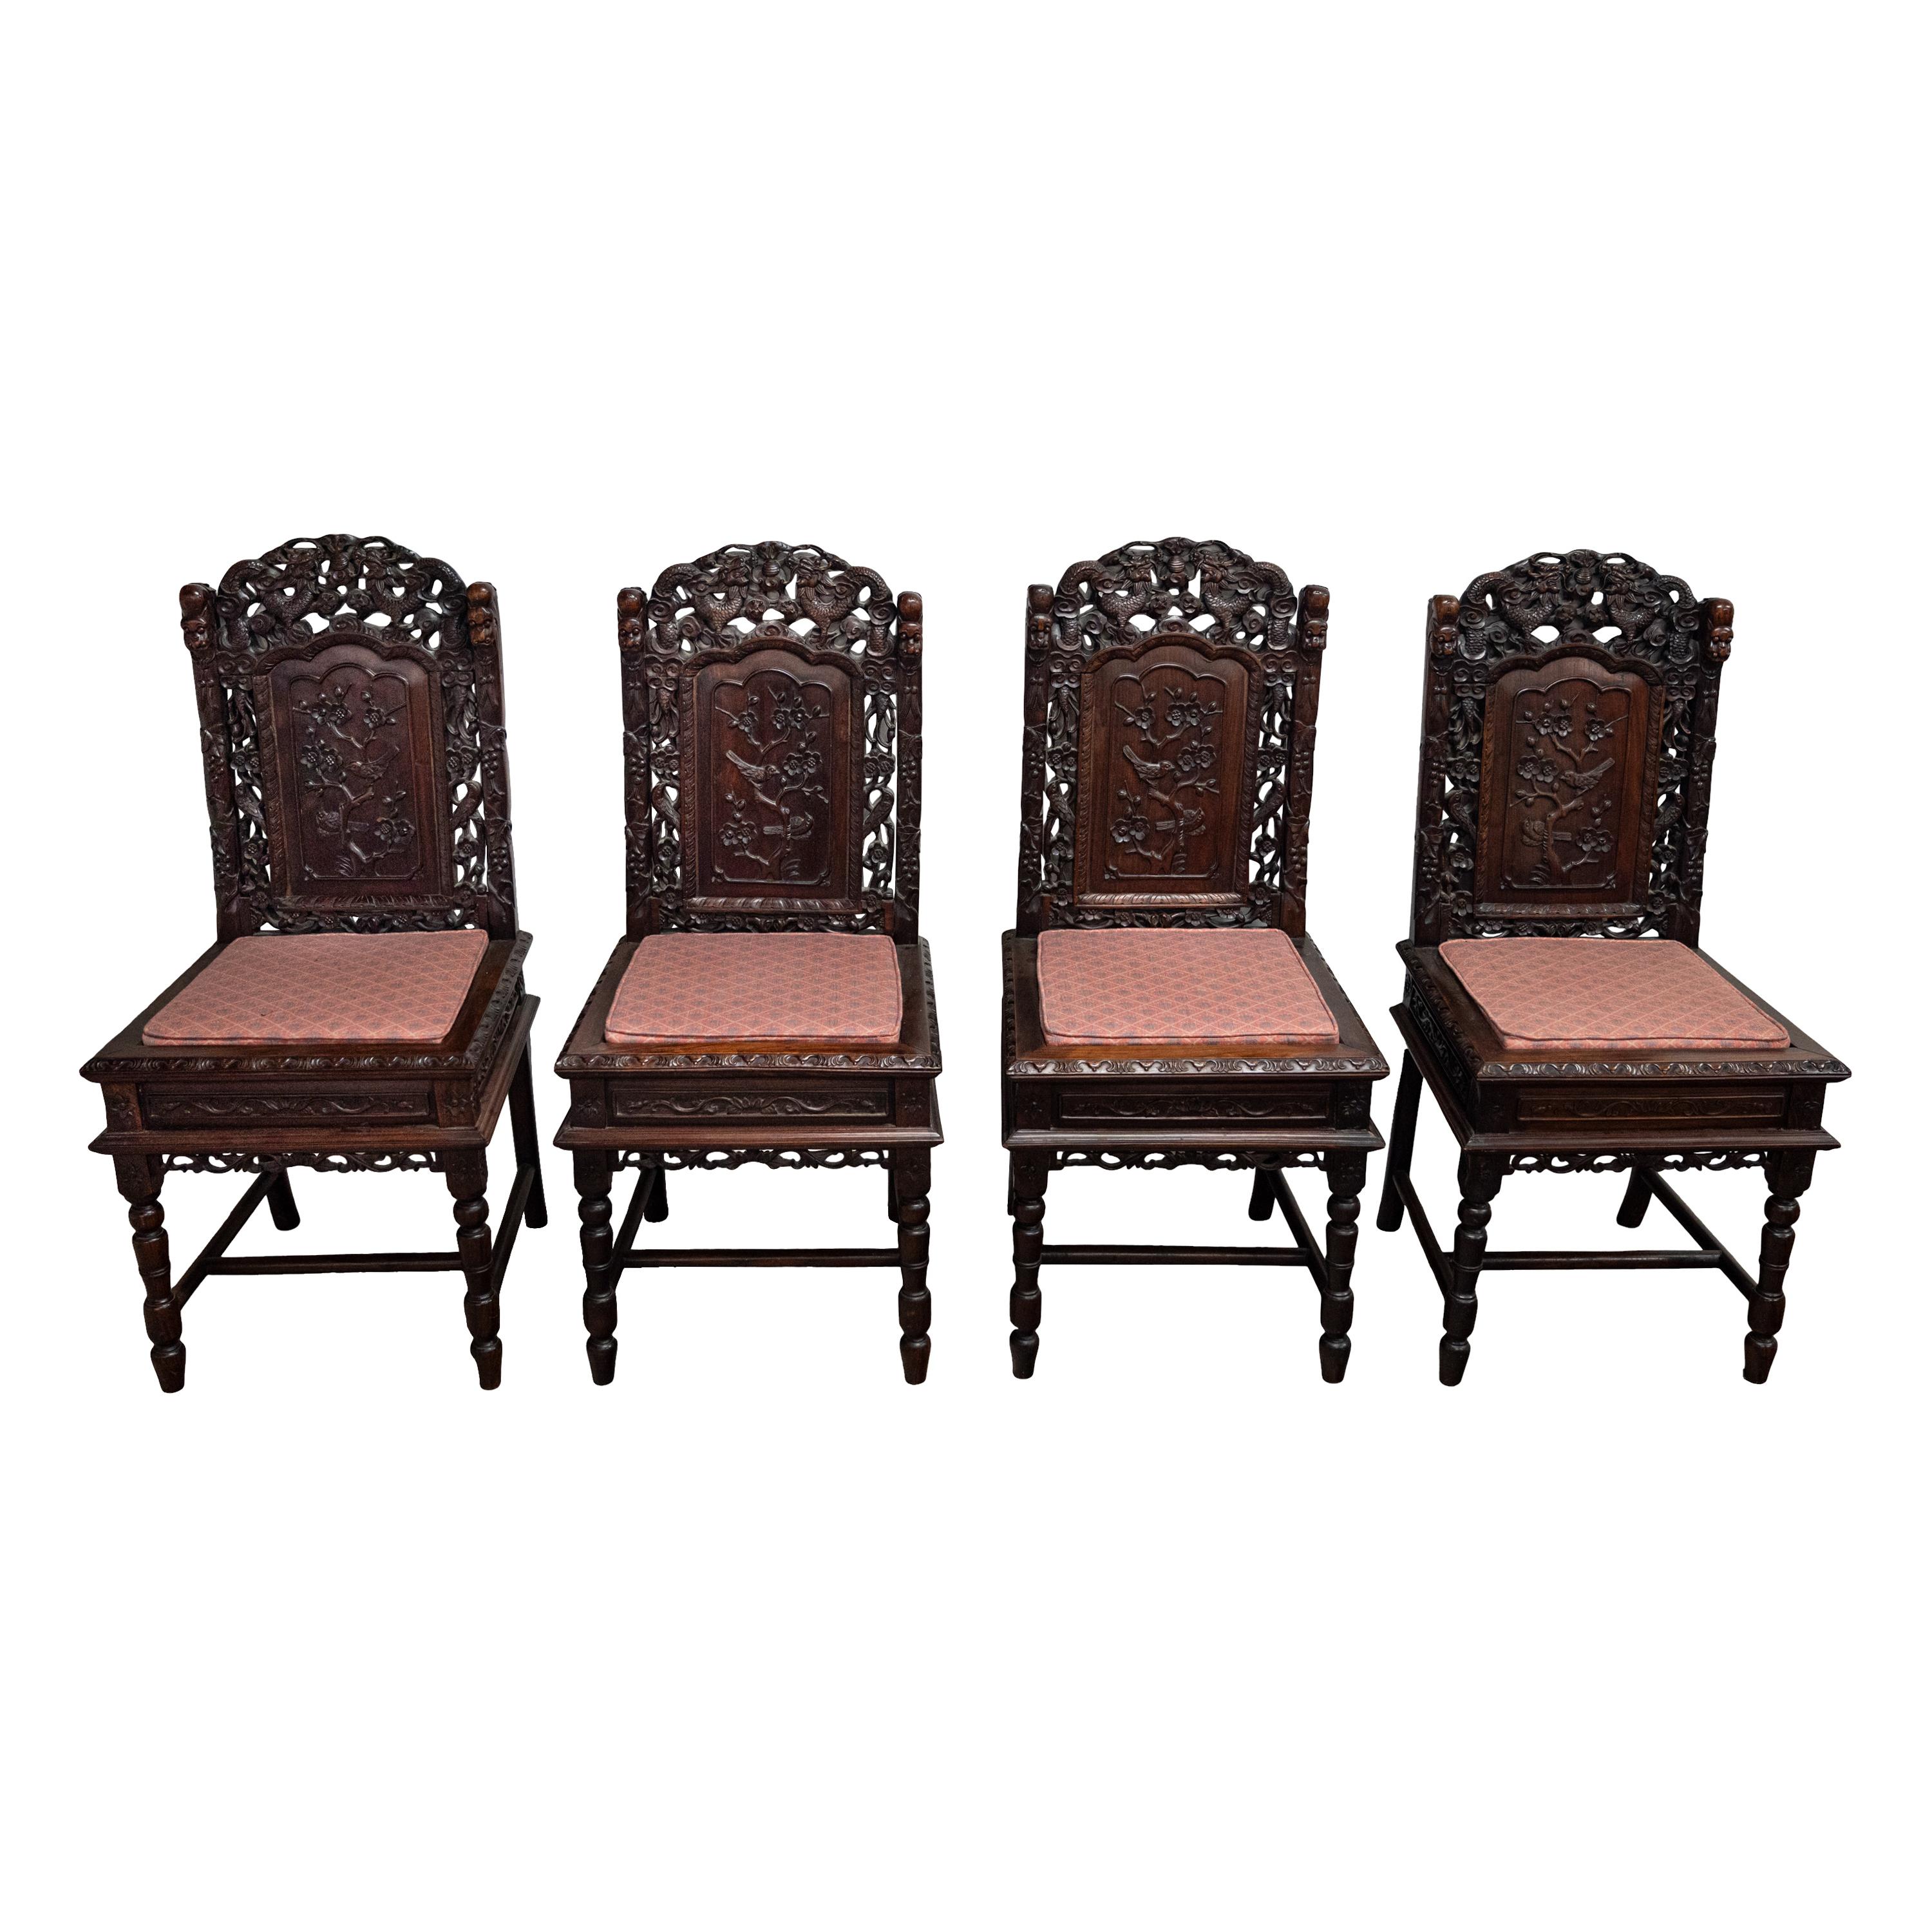 Eine feine Reihe von vier antiken chinesischen Qing-Dynastie geschnitzt Palisander Drachen Stühle, um 1880.
Jeder Stuhl ist fein geschnitzt Wappen mit zwei gegenüberliegenden Drachen und eine flammende Perle, was Wohlstand und Weisheit, zu jeder